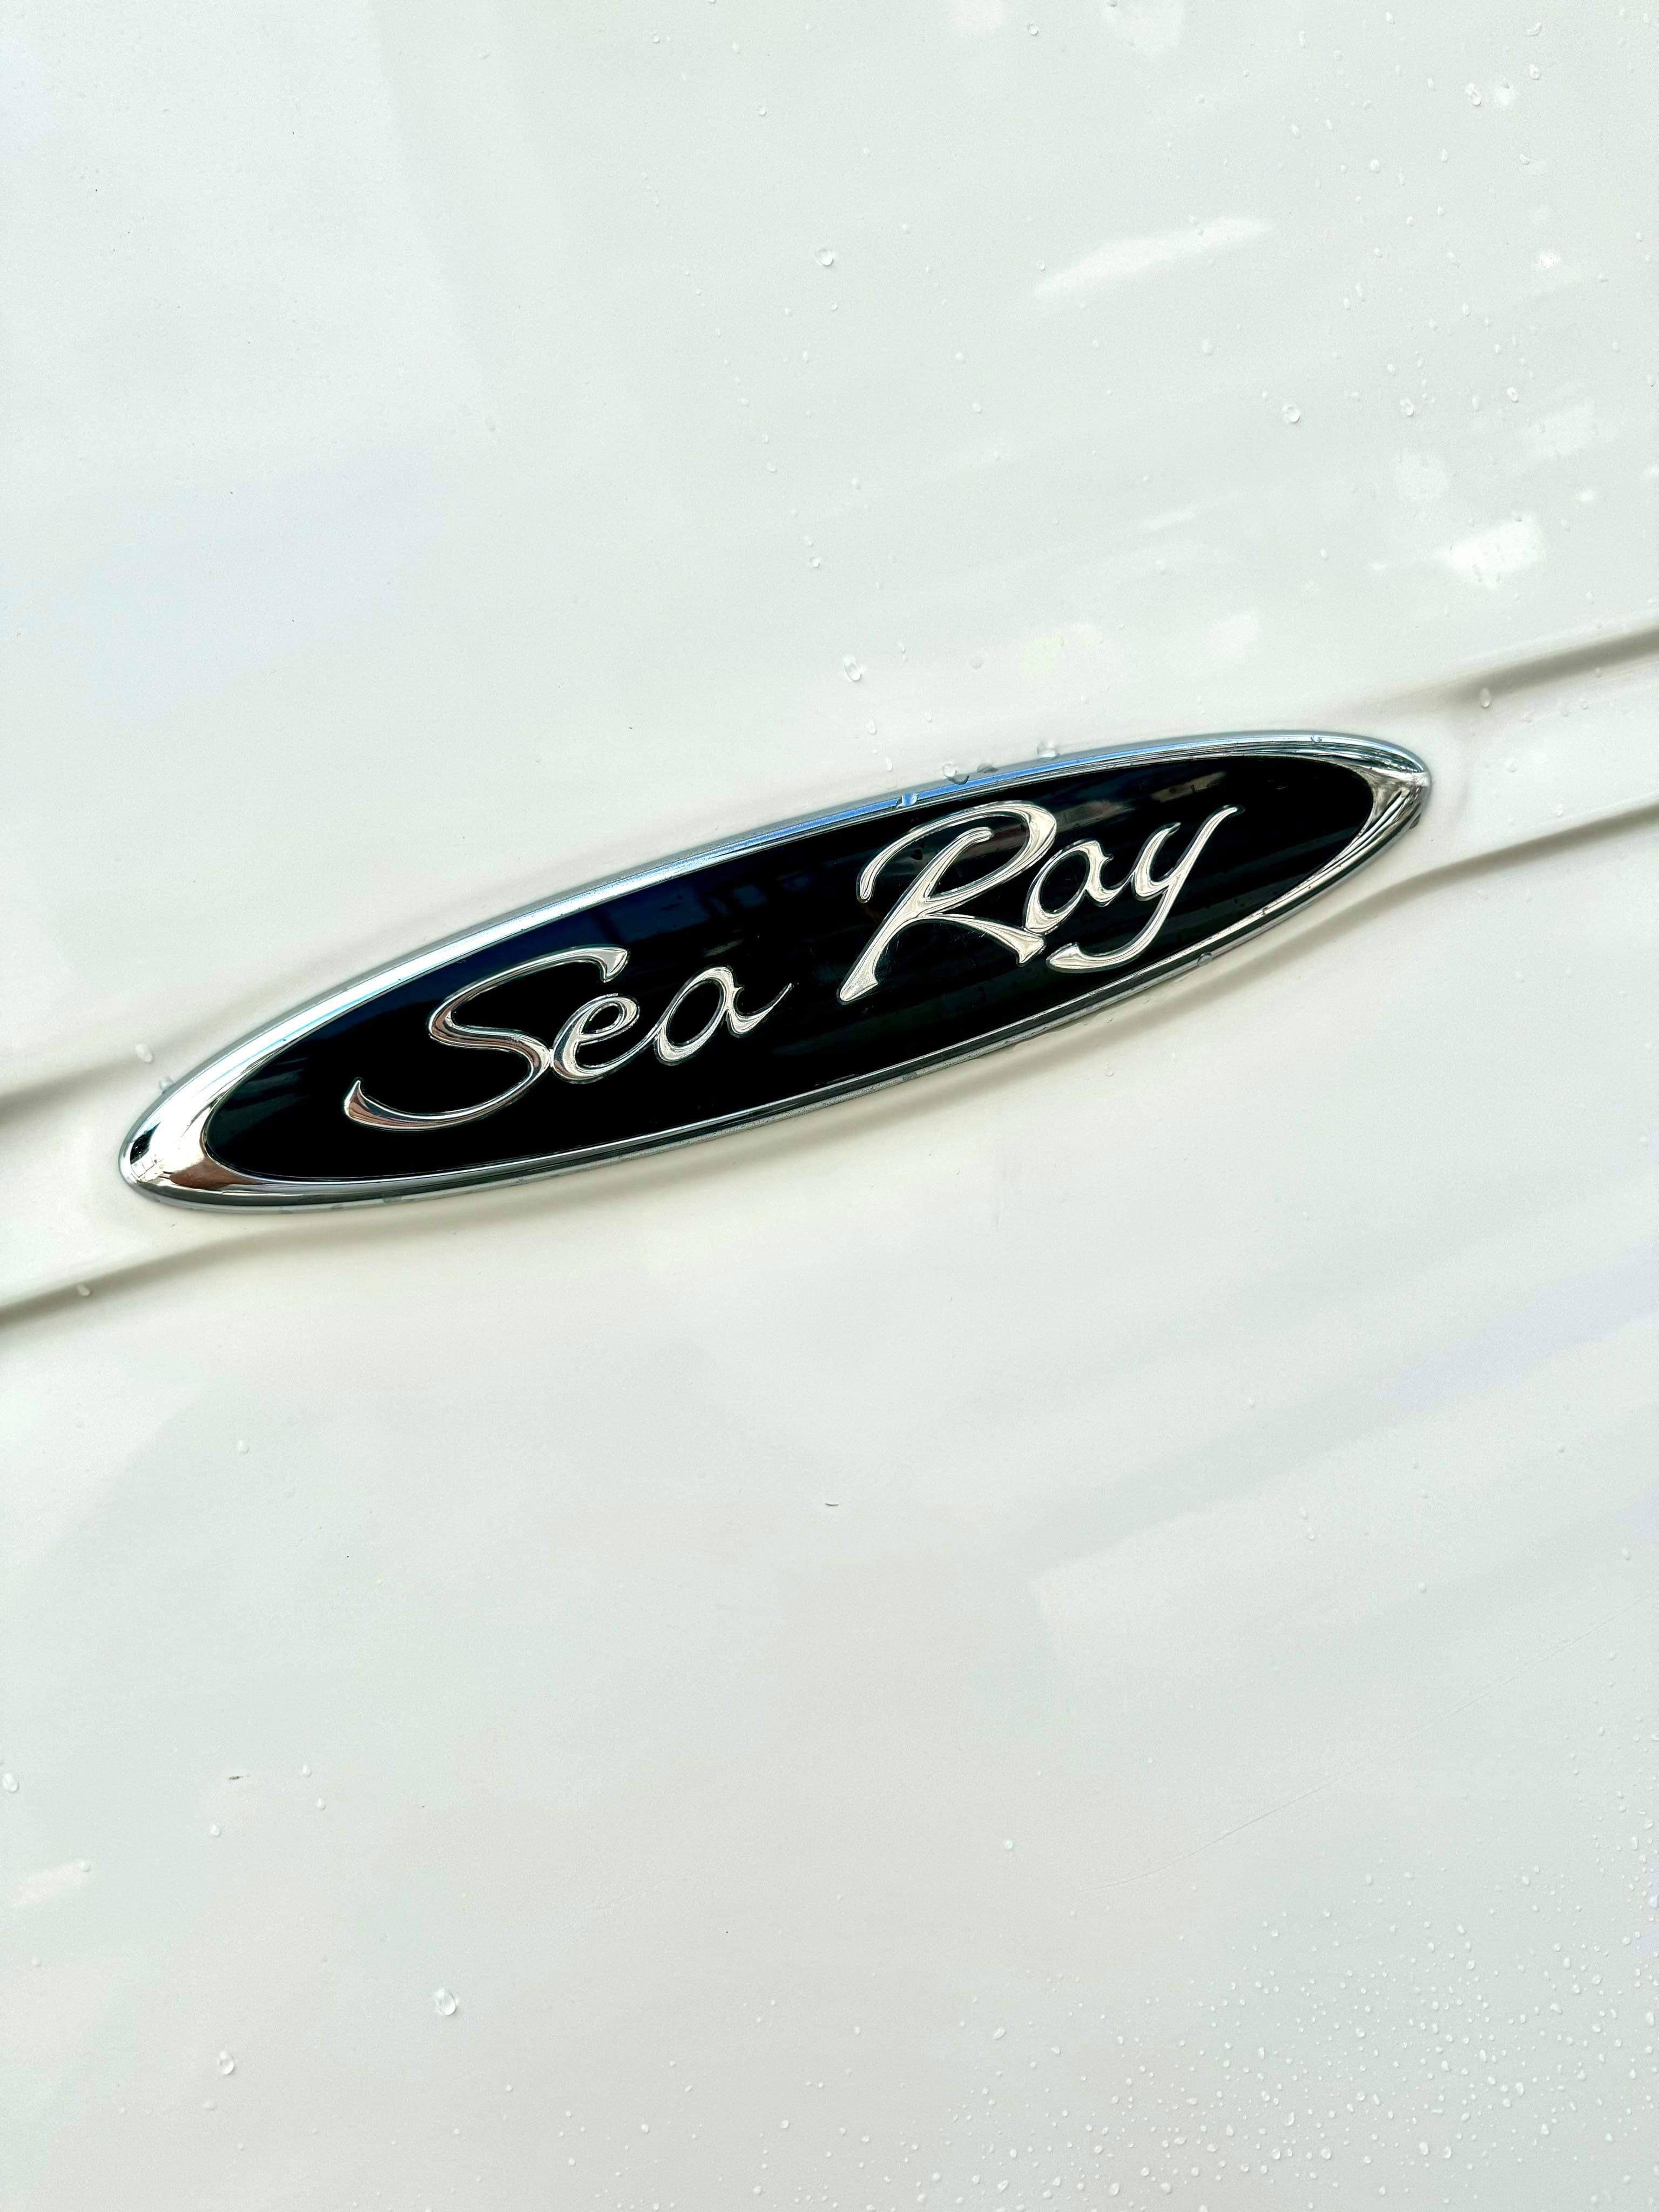 2006 Sea Ray 270 Amberjack